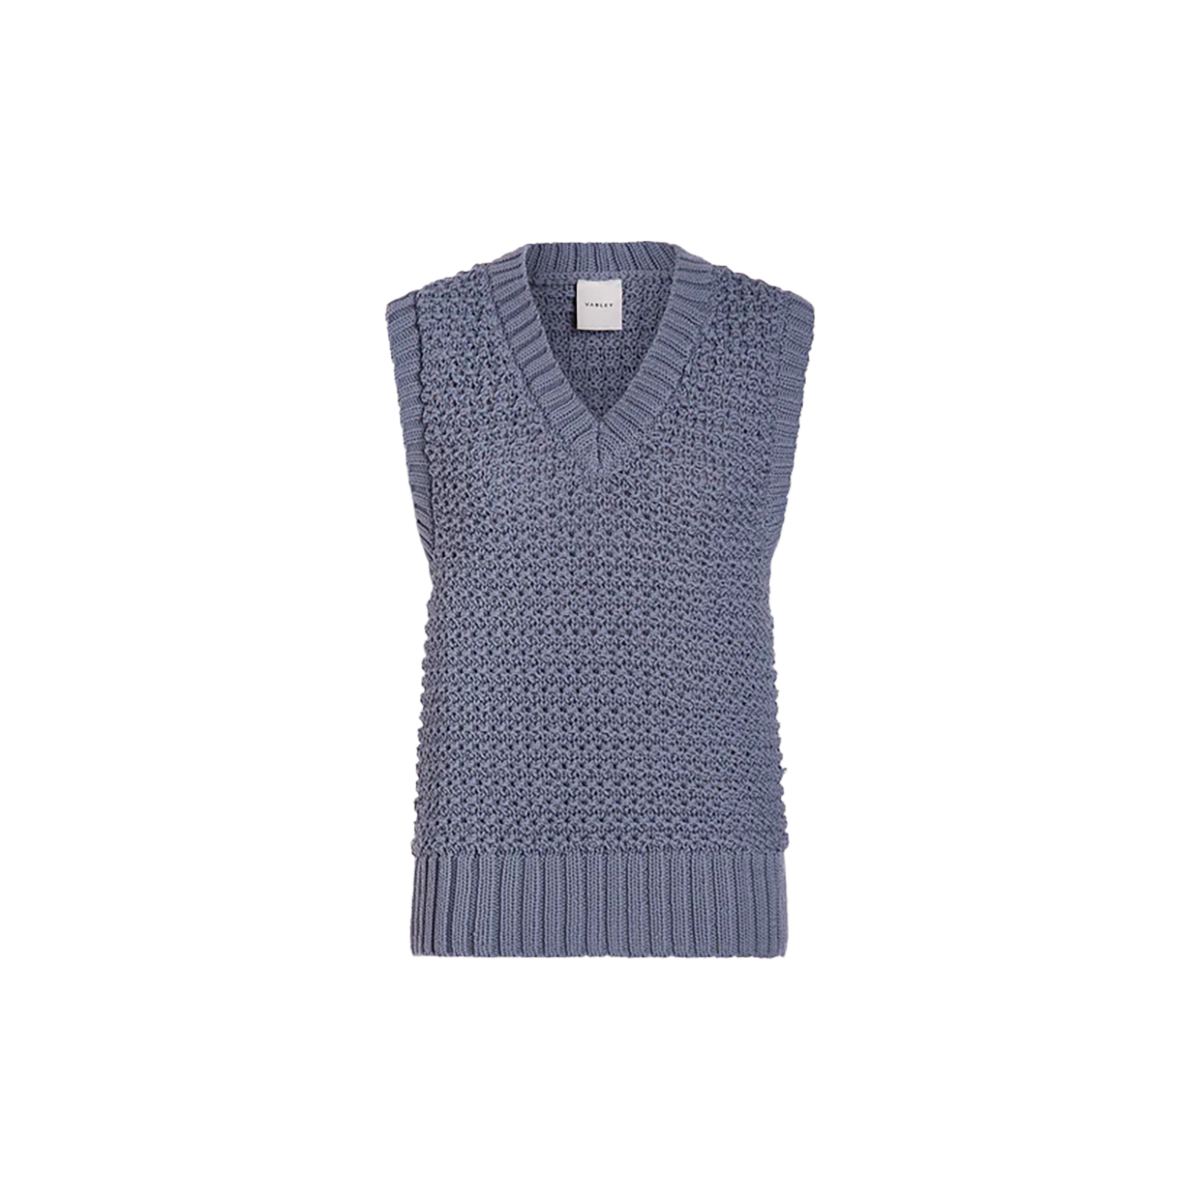 Varley Adie Knit Vest, , large image number null